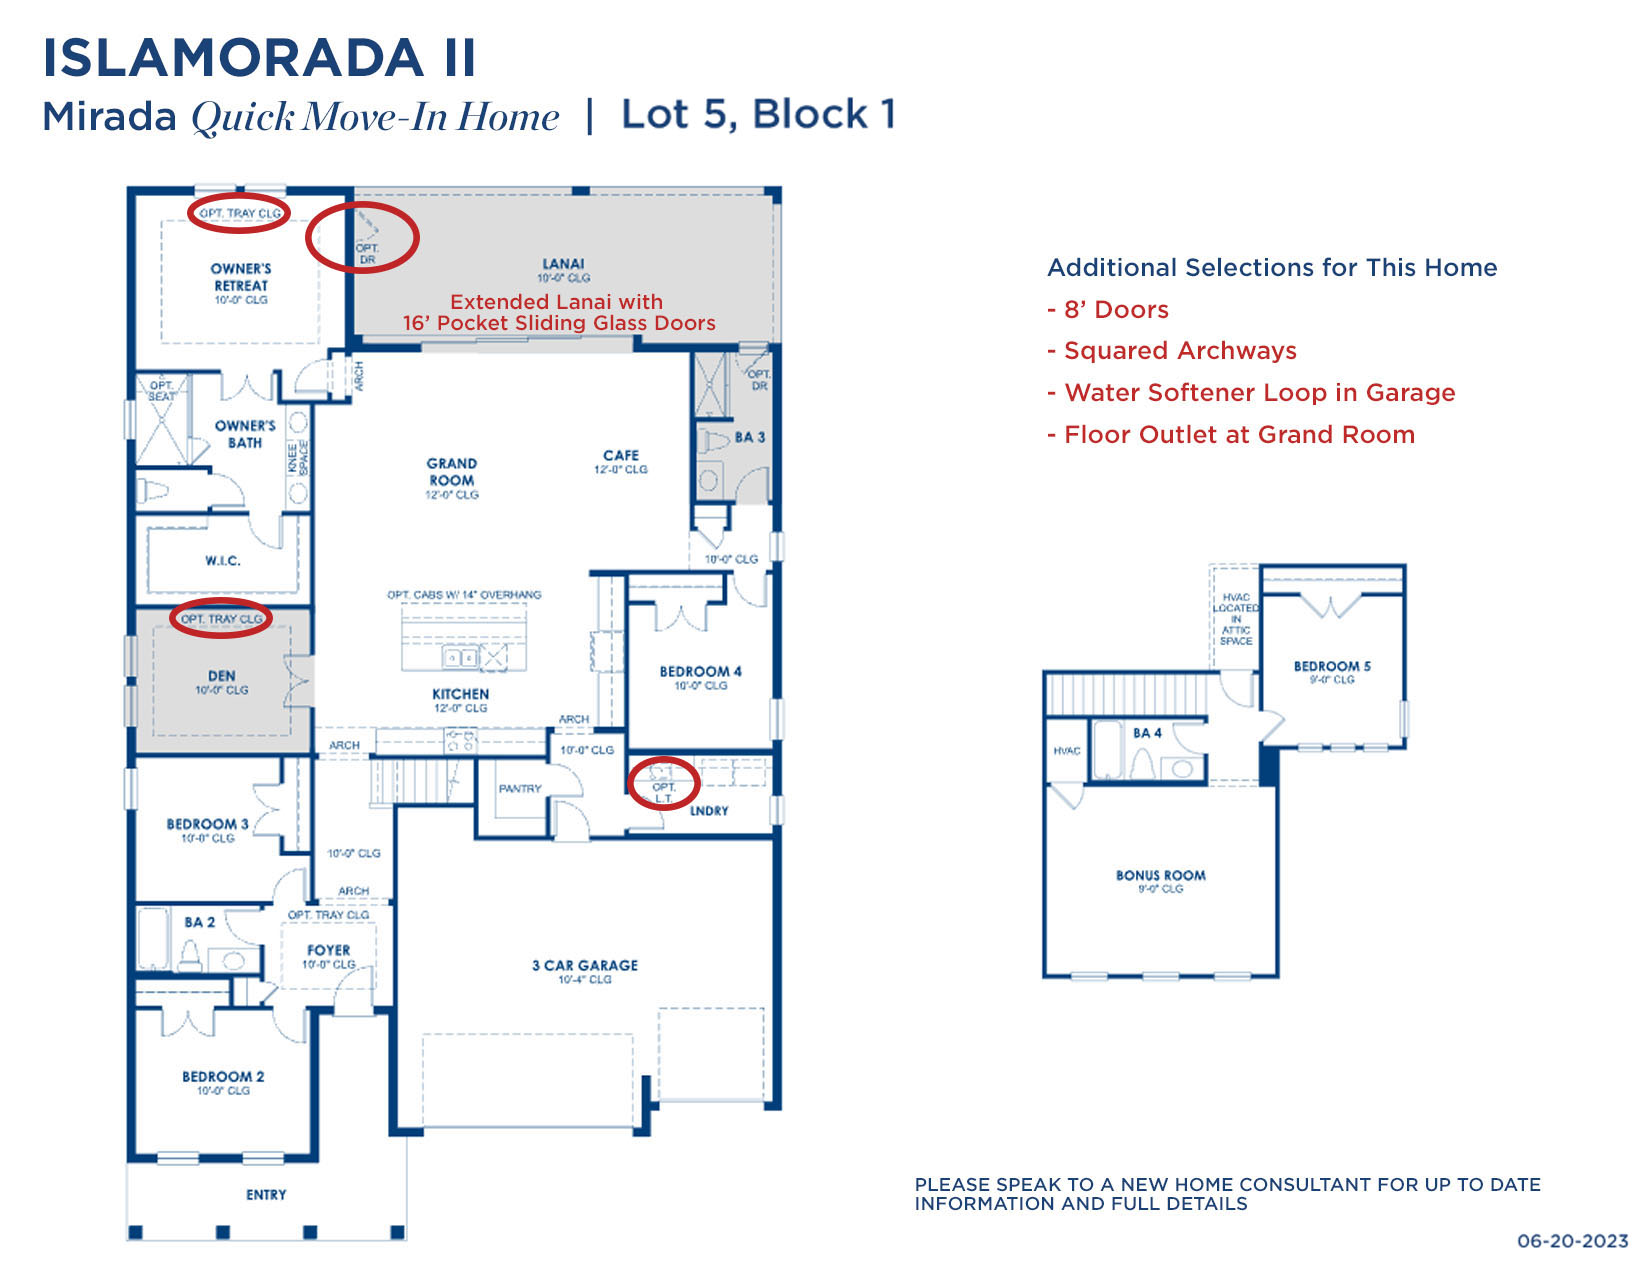 MIRADA ISLAMORADA II 5-1 62023 Floorplan